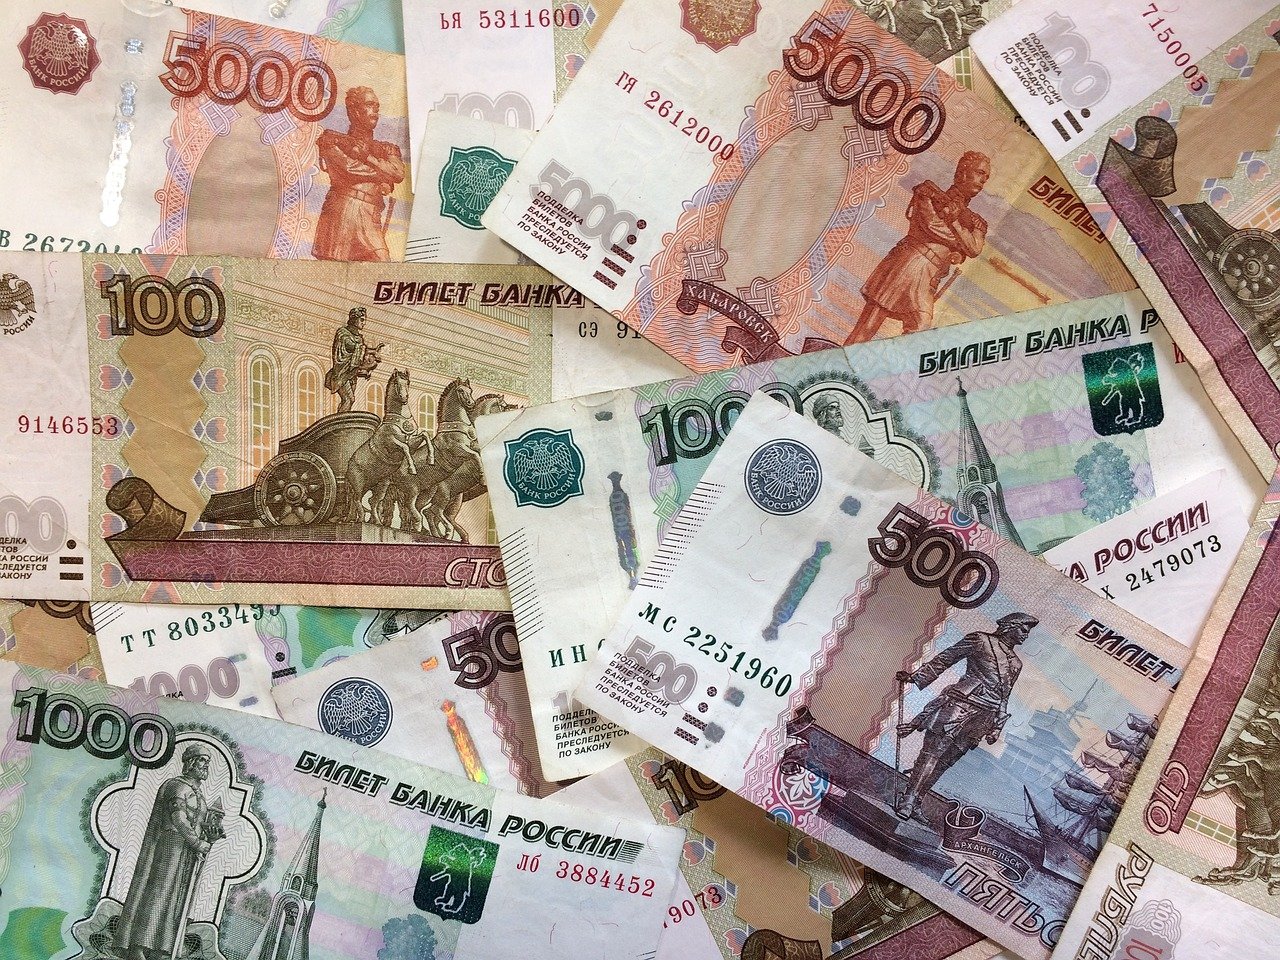 Житель Дорогобужа потерял около 2 млн рублей в надежде заработать на инвестициях